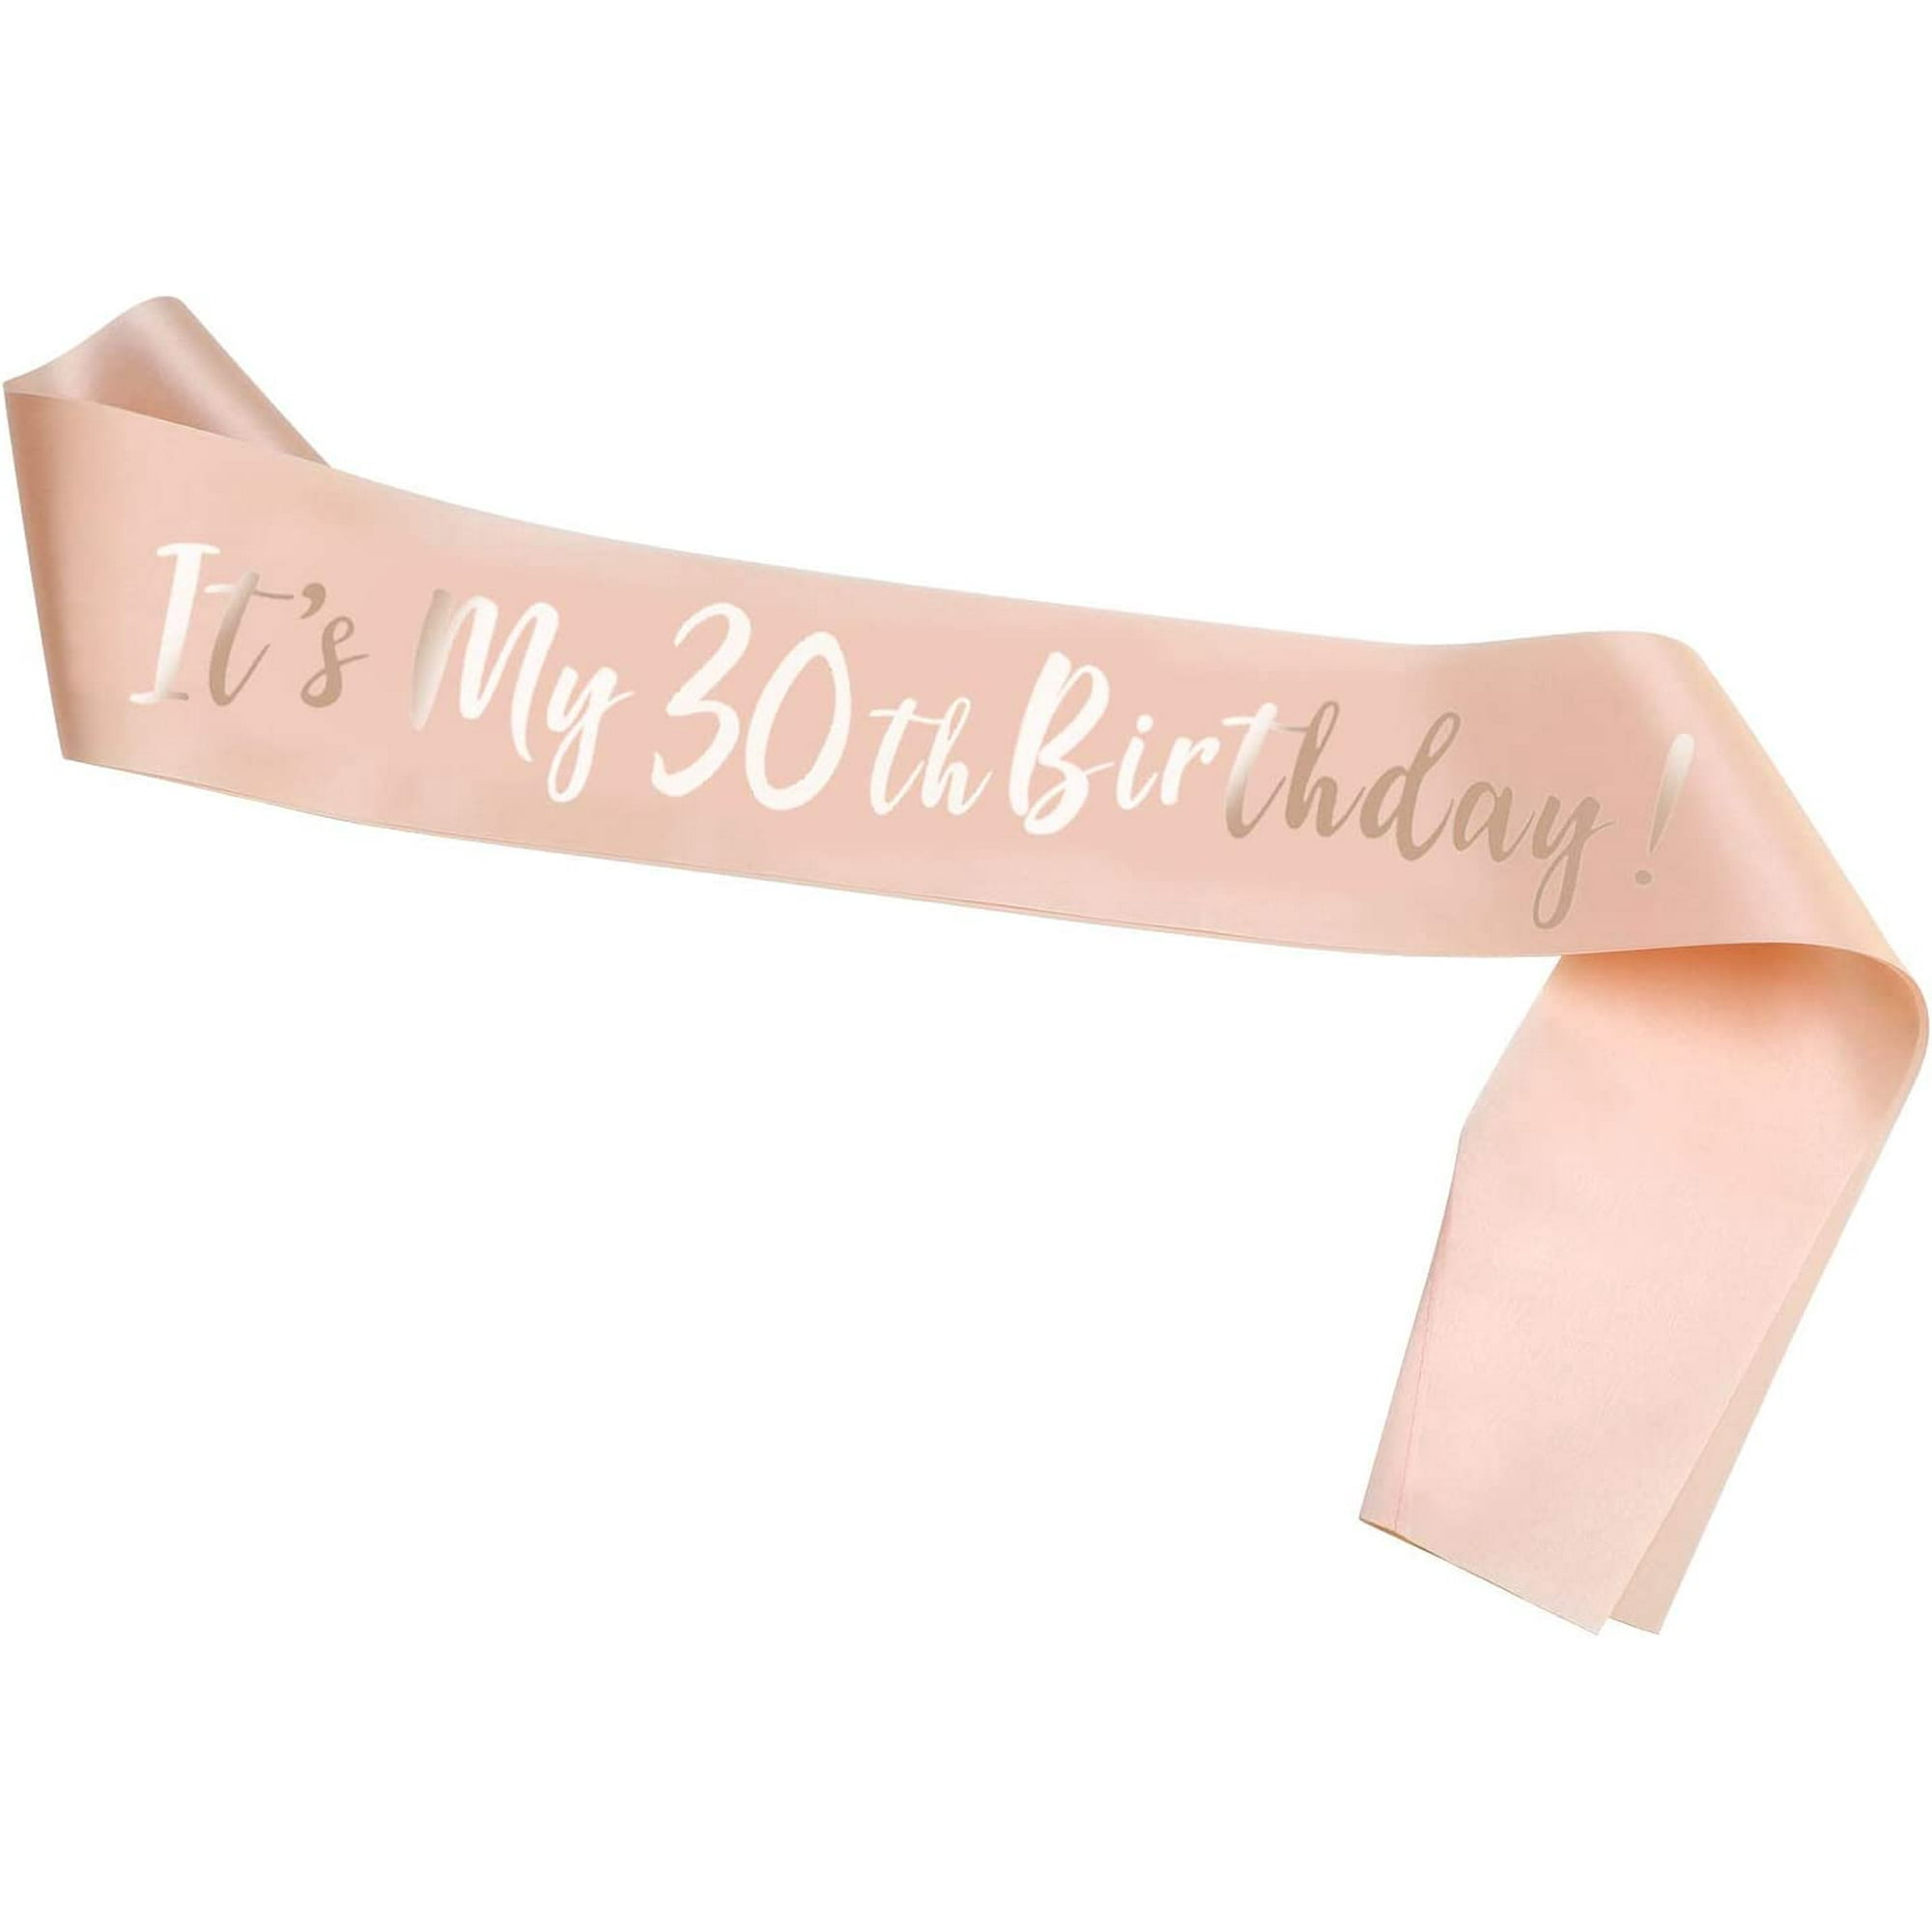 Banda de cumpleaños de 30 y fabulosa, papel de aluminio rosa intenso '30 y  fabuloso', banda de satén plateado para cumpleaños de 30 años para mujeres